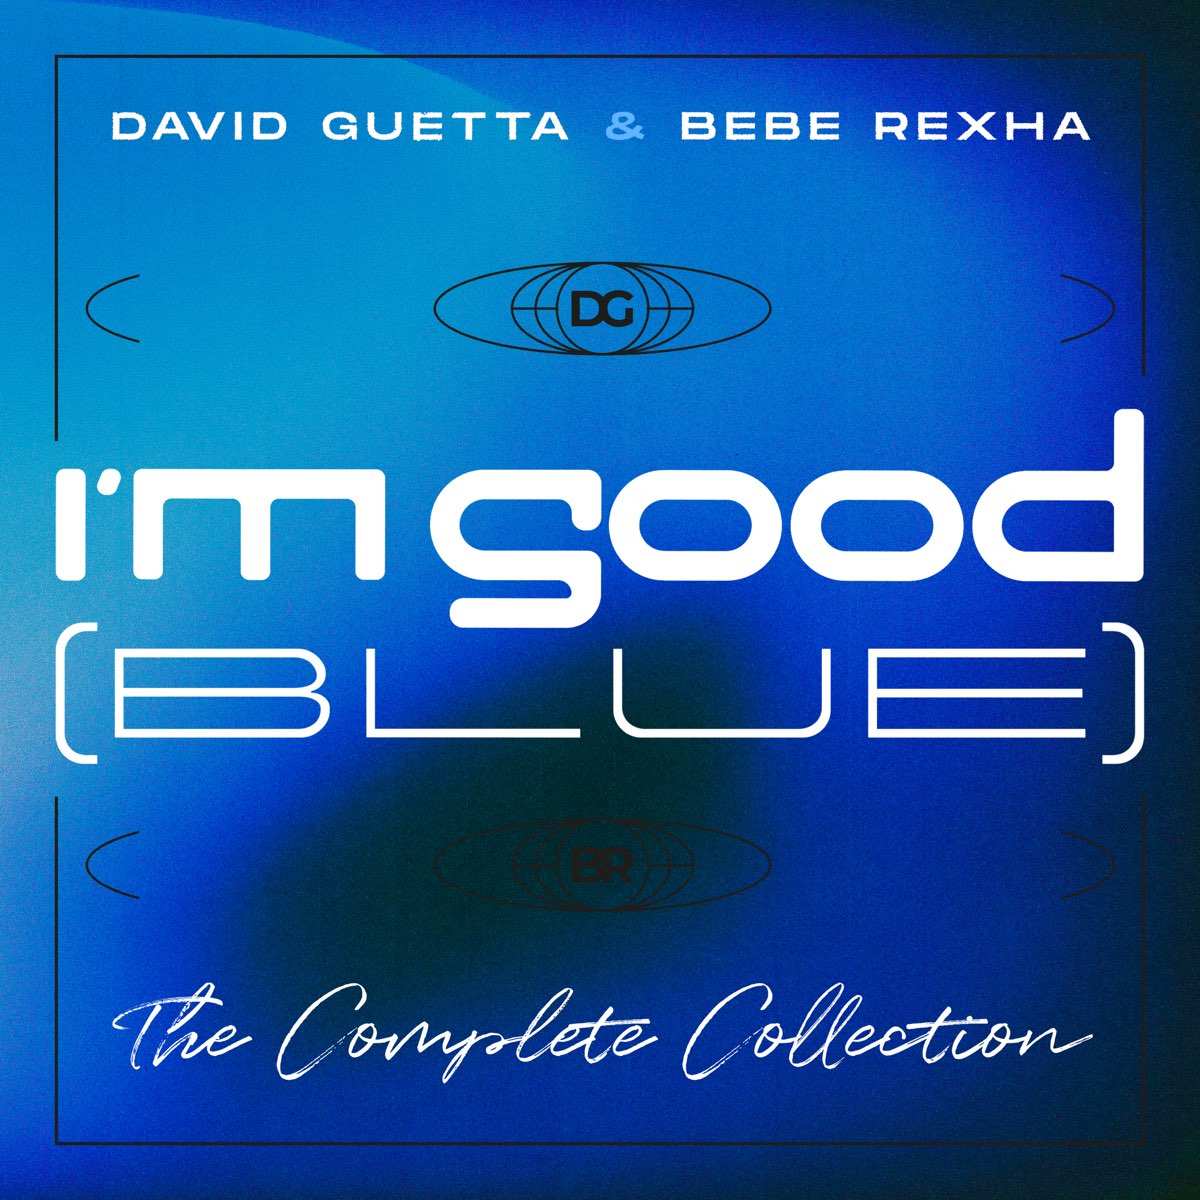 David Guetta & Bebe Rexha - I'm Good (Blue)